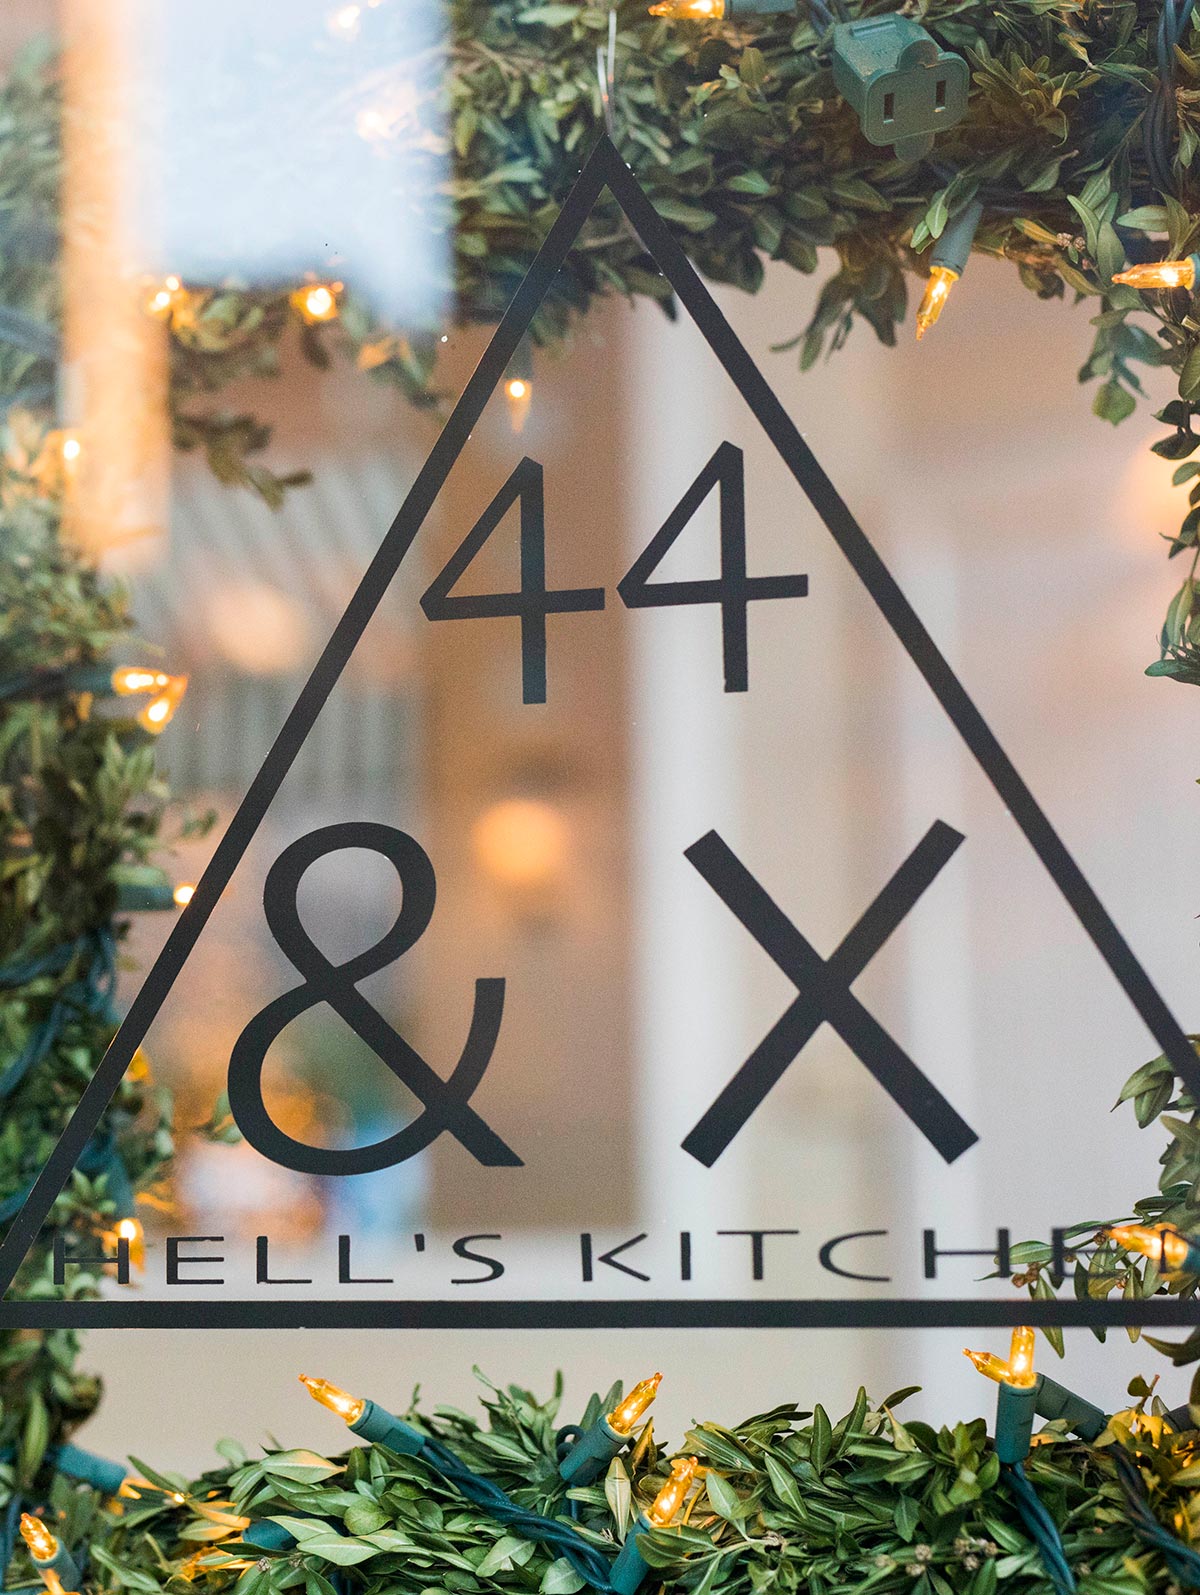 44 & X Hell's Kitchen